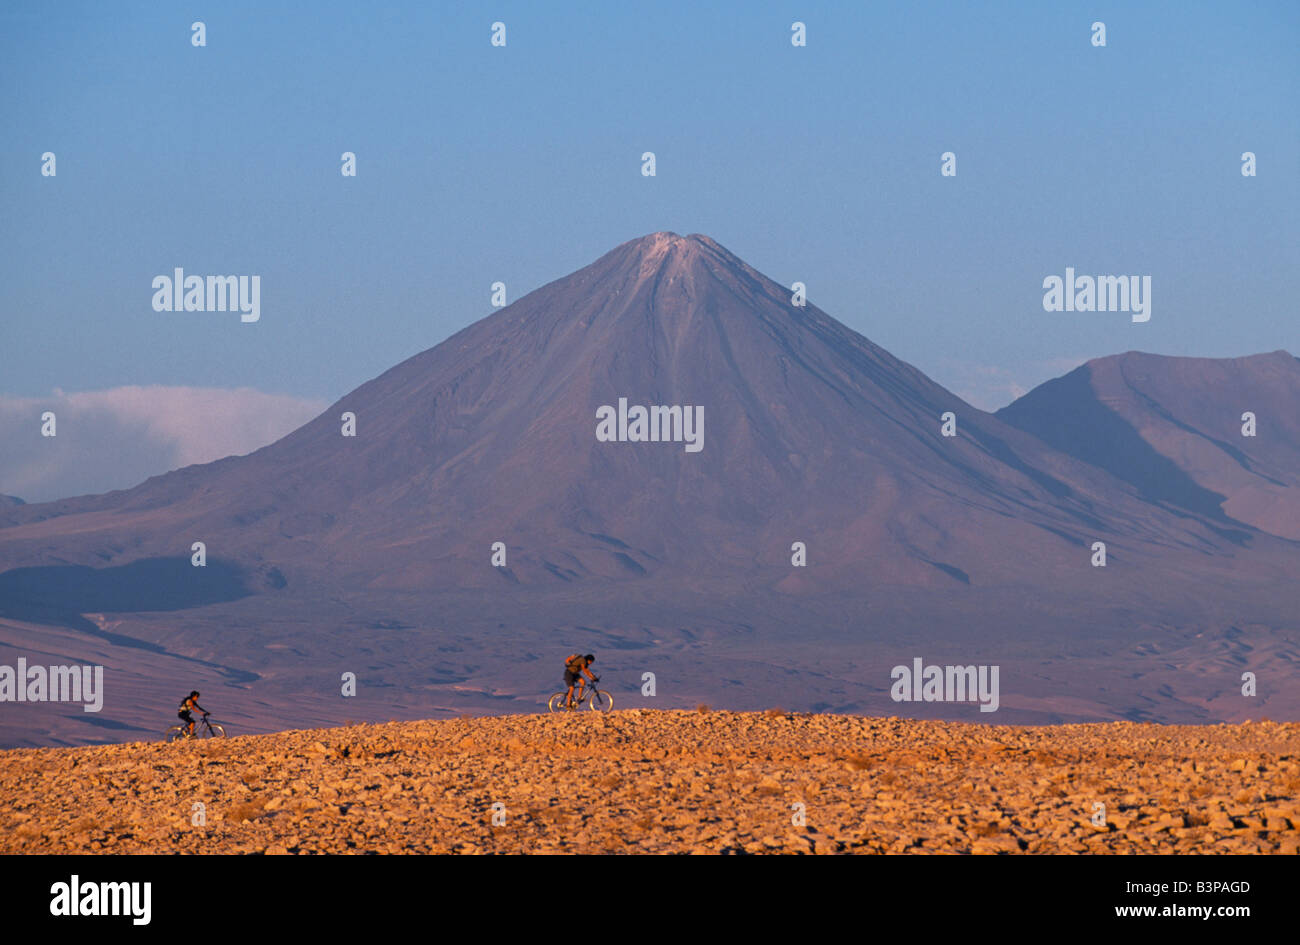 Chile, Atacama Desert. Mountain biking in the Atacama Desert against a backdrop of the perfect cone of Volcan Licancabur 5916 m Stock Photo